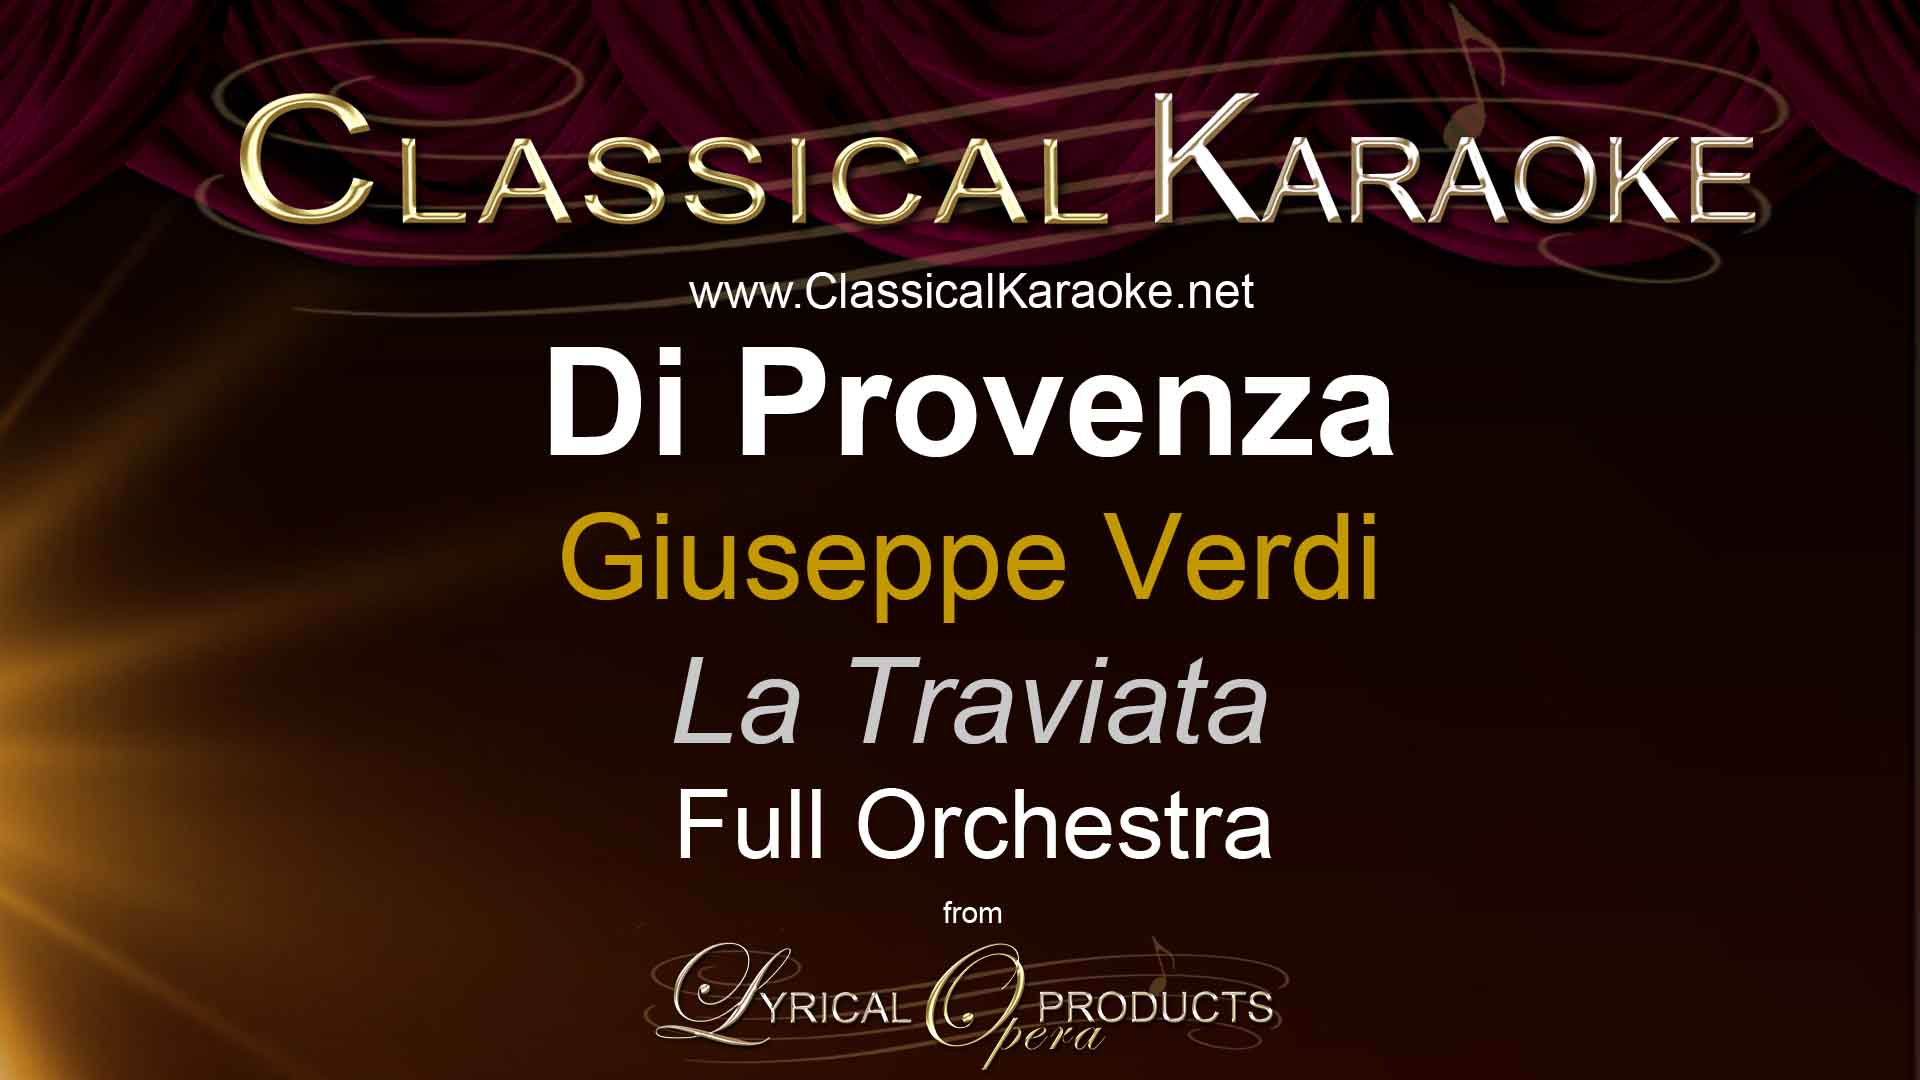 Di Provenza, from La Traviata, Full Orchestral Accompaniment (karaoke) track